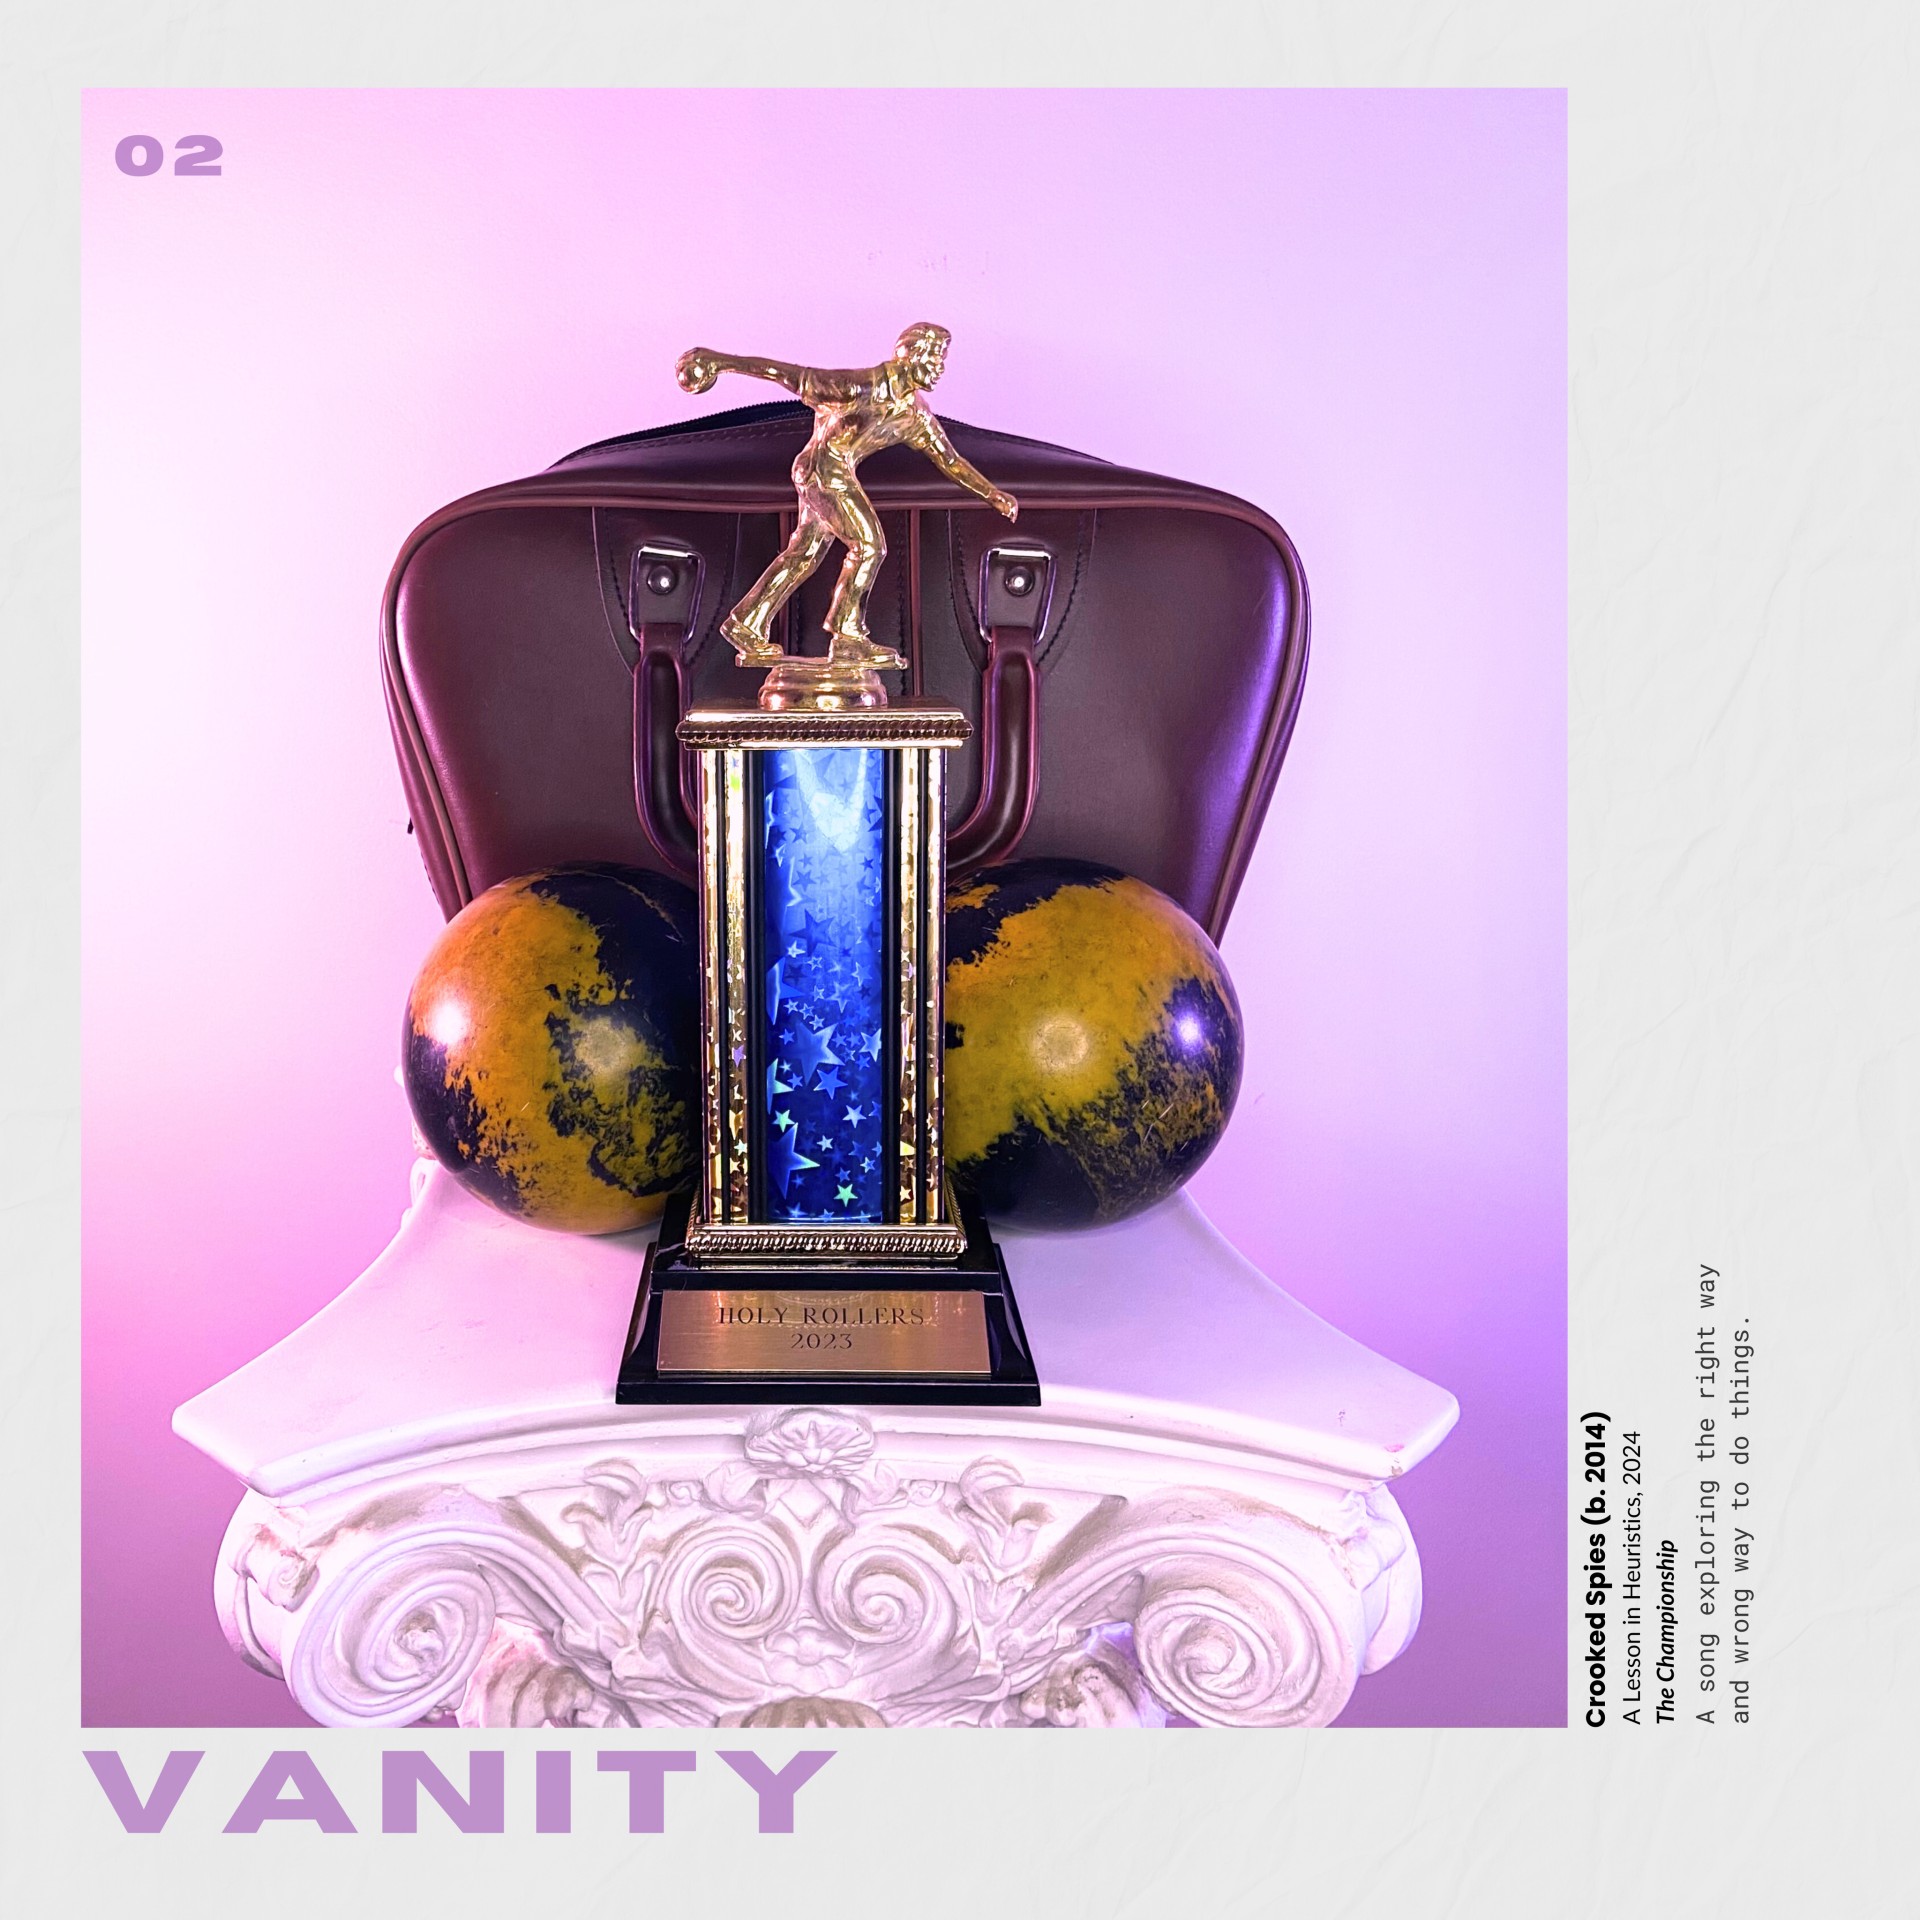 Crooked Spies “Vanity” single artwork